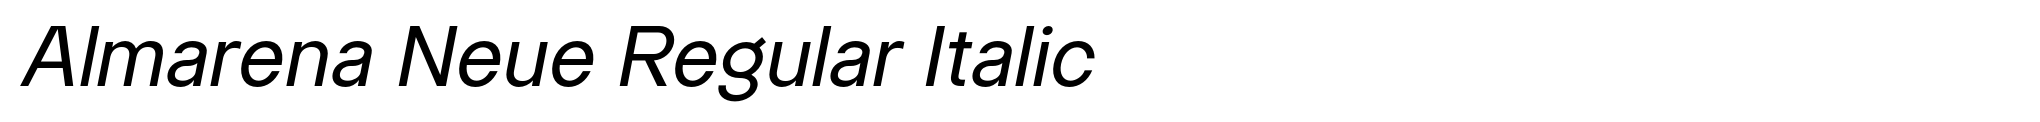 Almarena Neue Regular Italic image